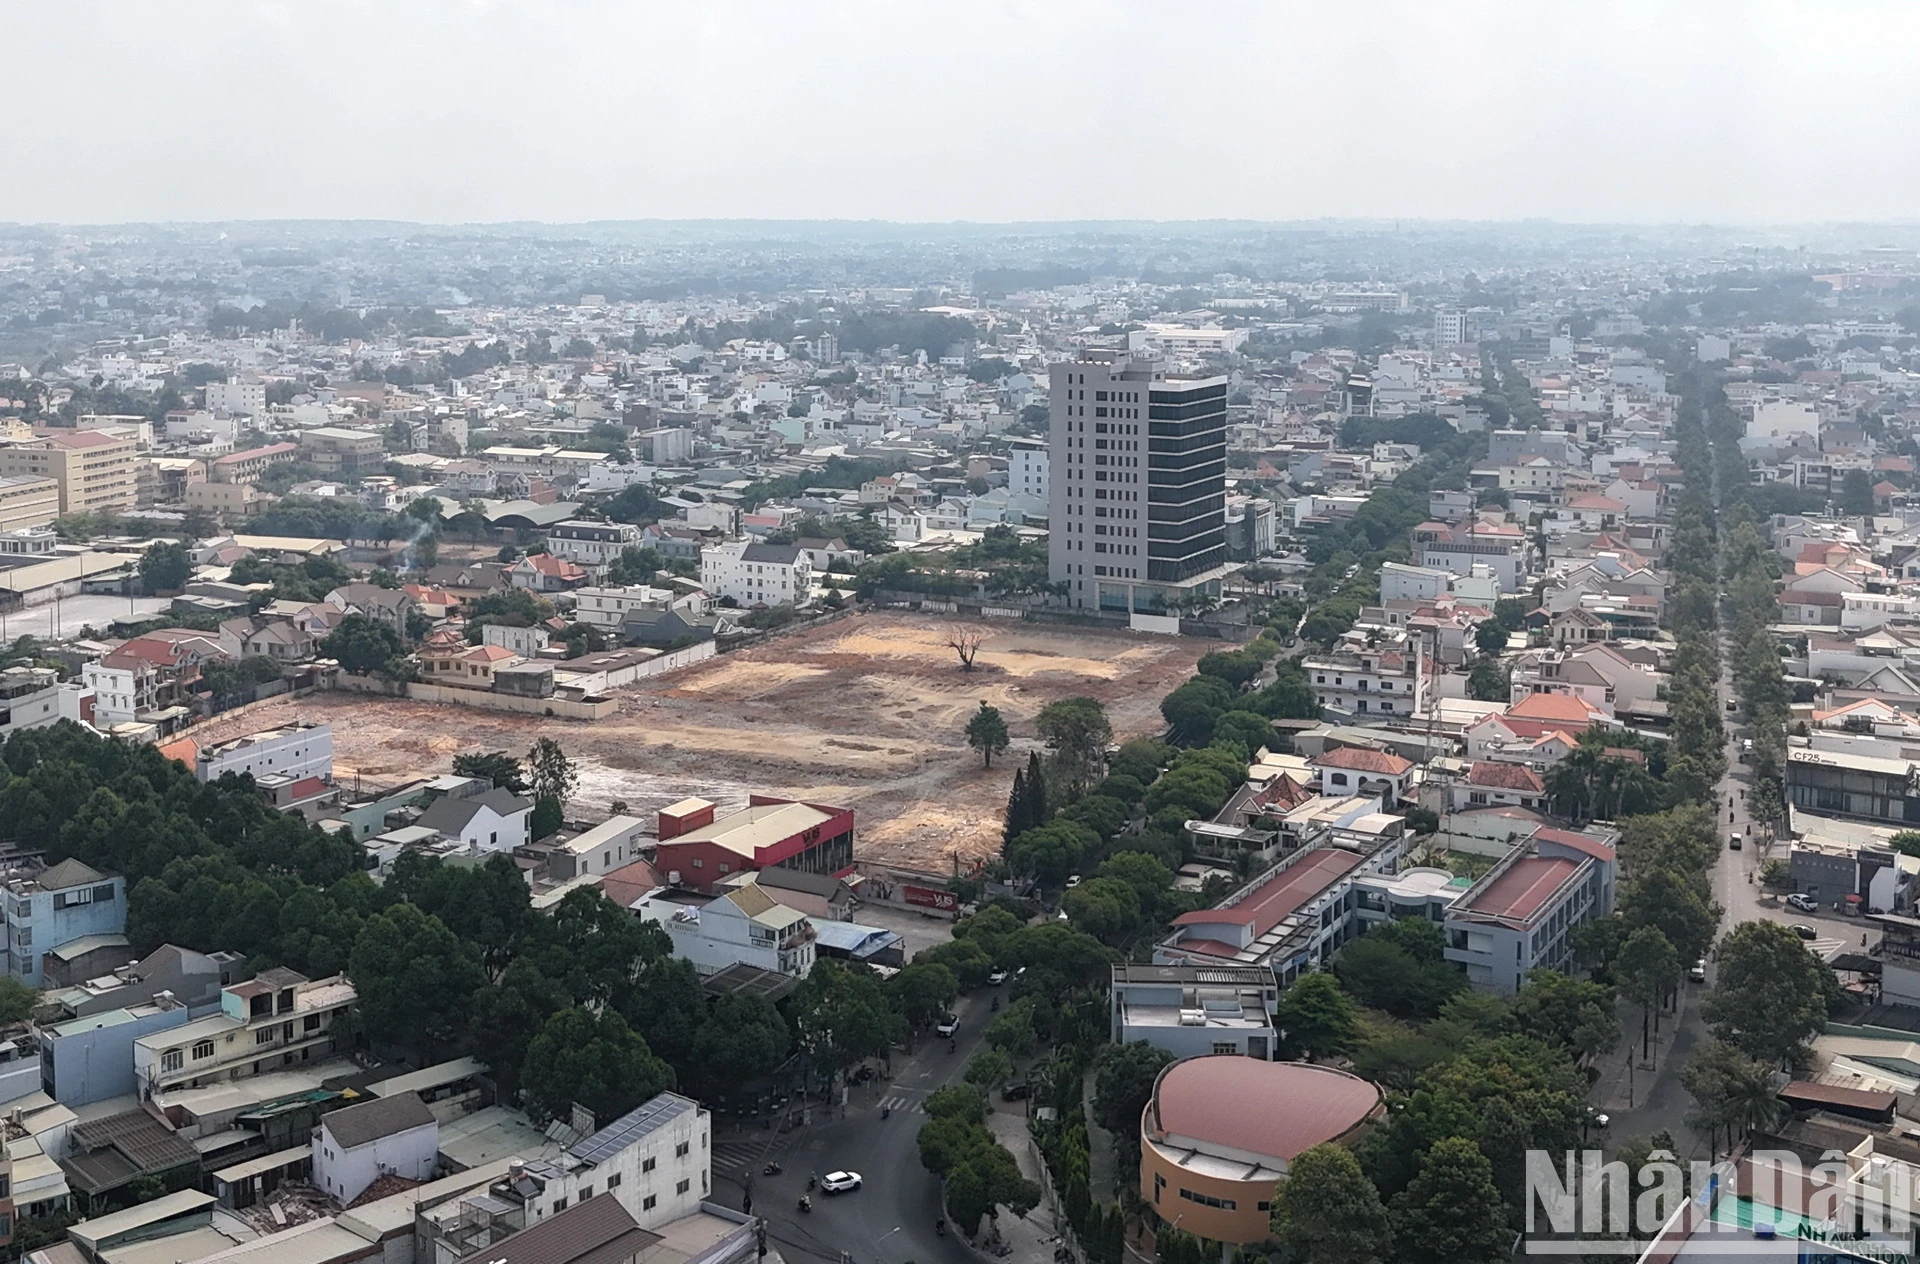 Dùng đất “vàng” ở Biên Hòa để xây dựng khu tái định cư ảnh 5